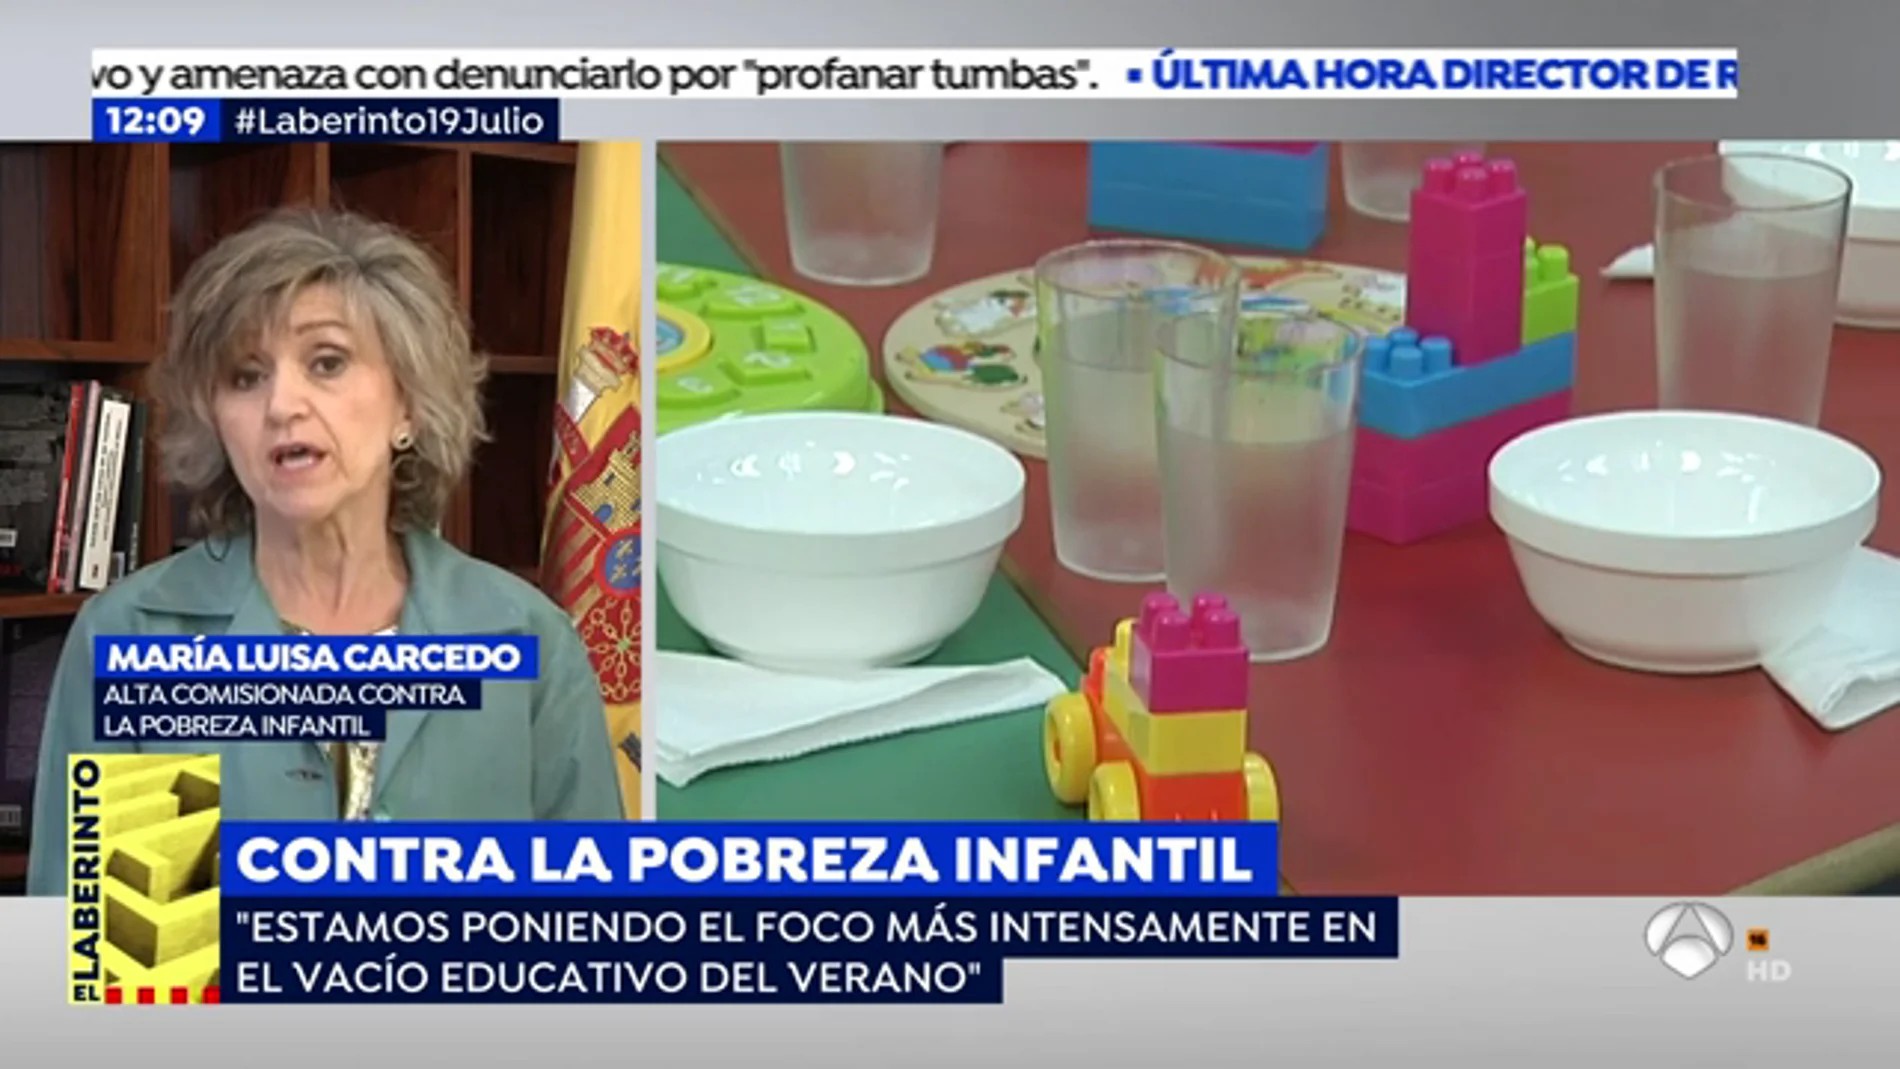 Comisión Pobreza Infantil: "Uno de cada tres niños en España no tiene acceso a una alimentación equilibrada durante el verano"